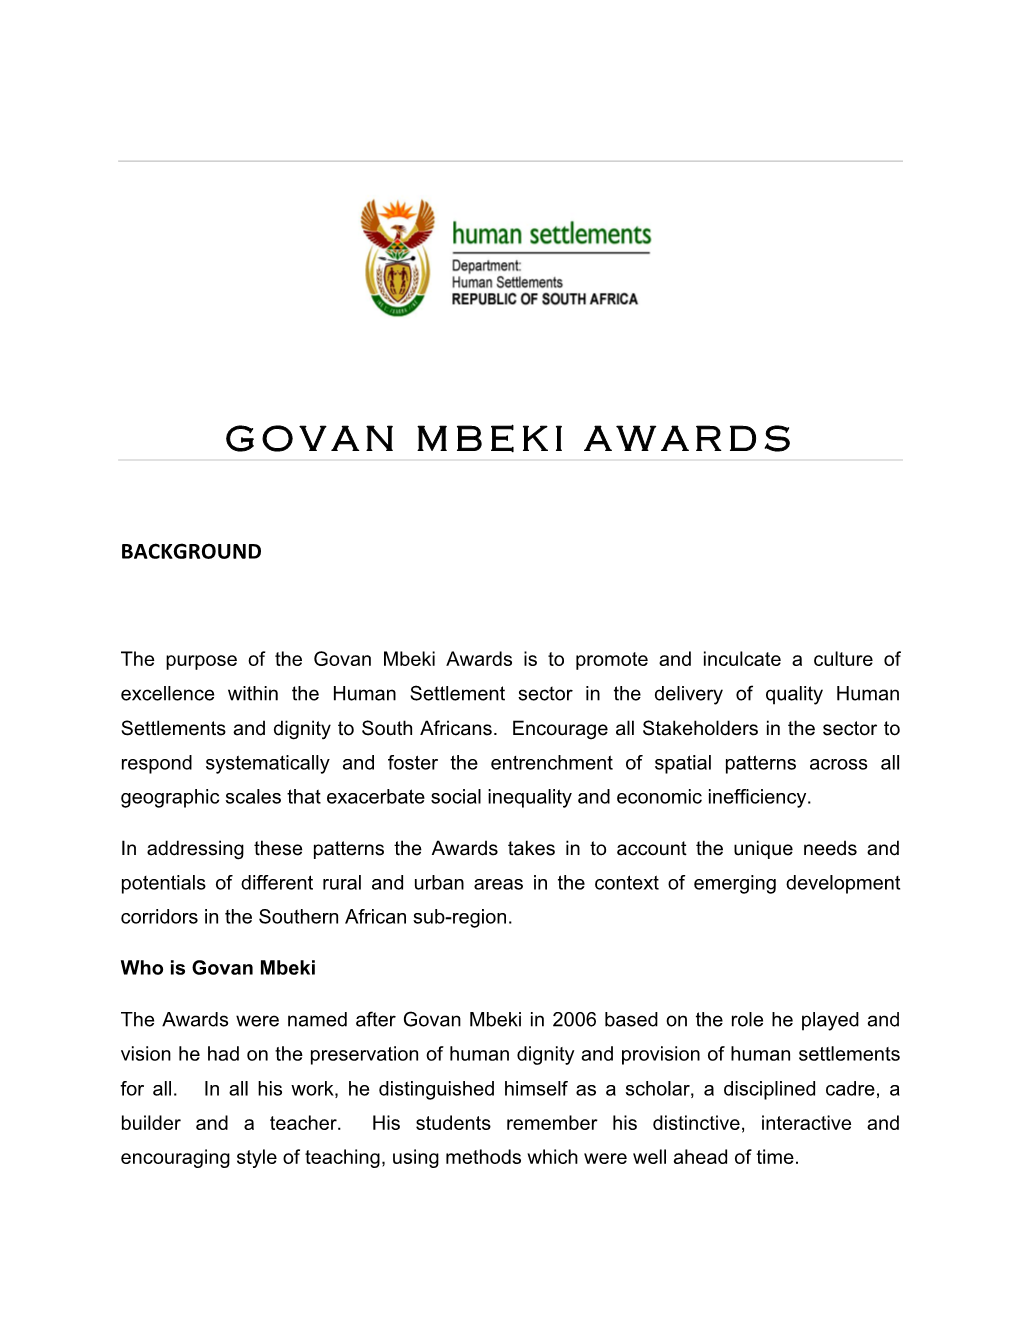 Govan Mbeki Awards